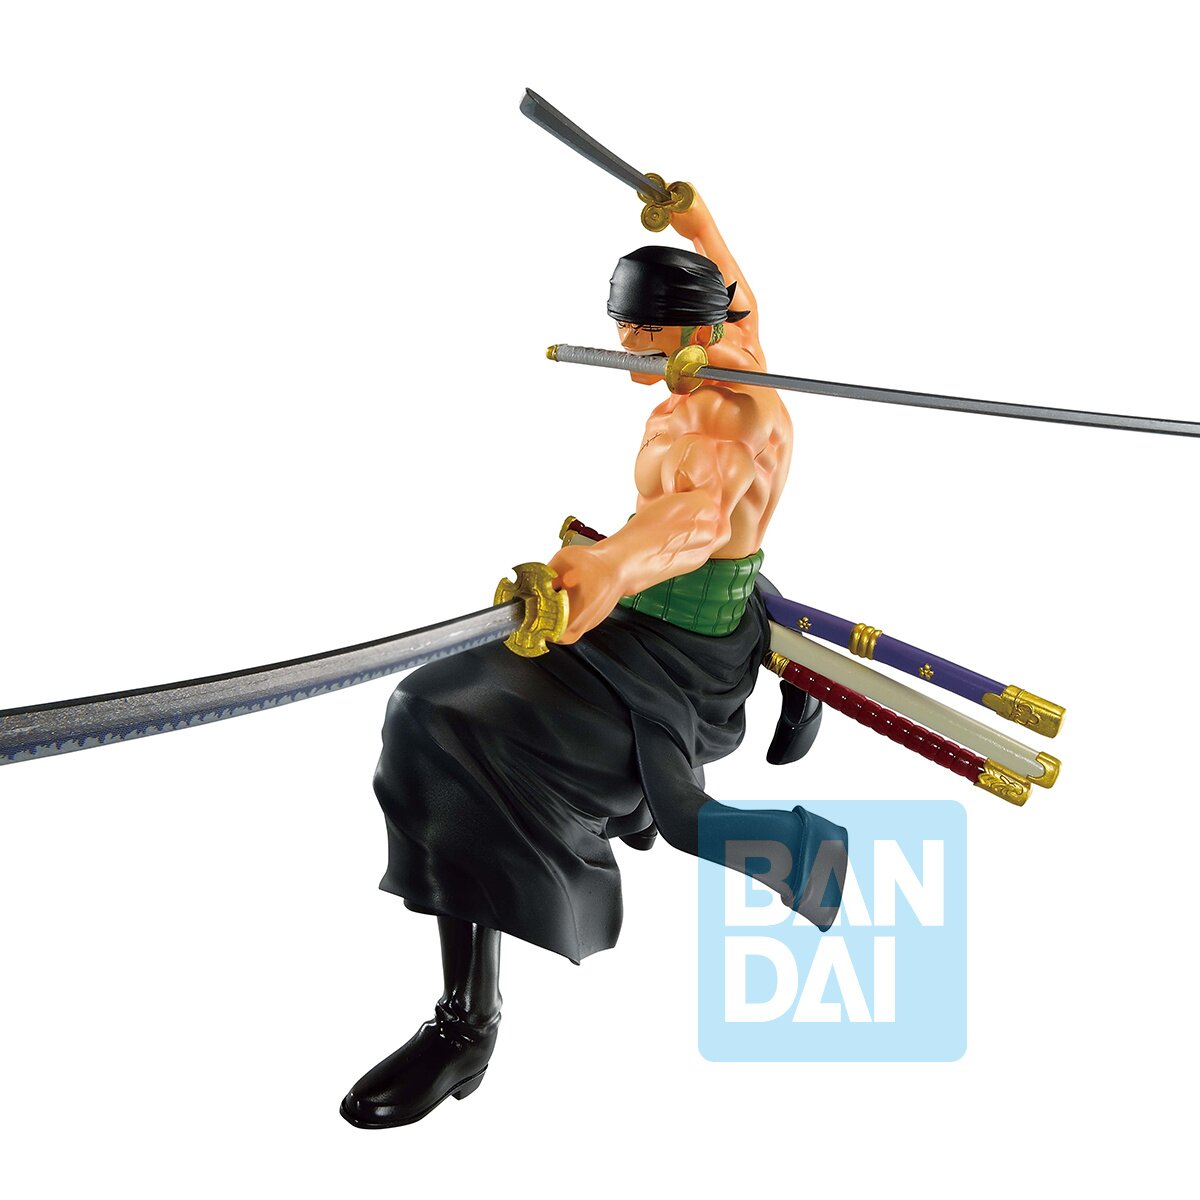 Ichibansho Ichiban - One Piece - Roronoa Zoro (Wano Country -Third Act-),  Bandai Spirits Figure